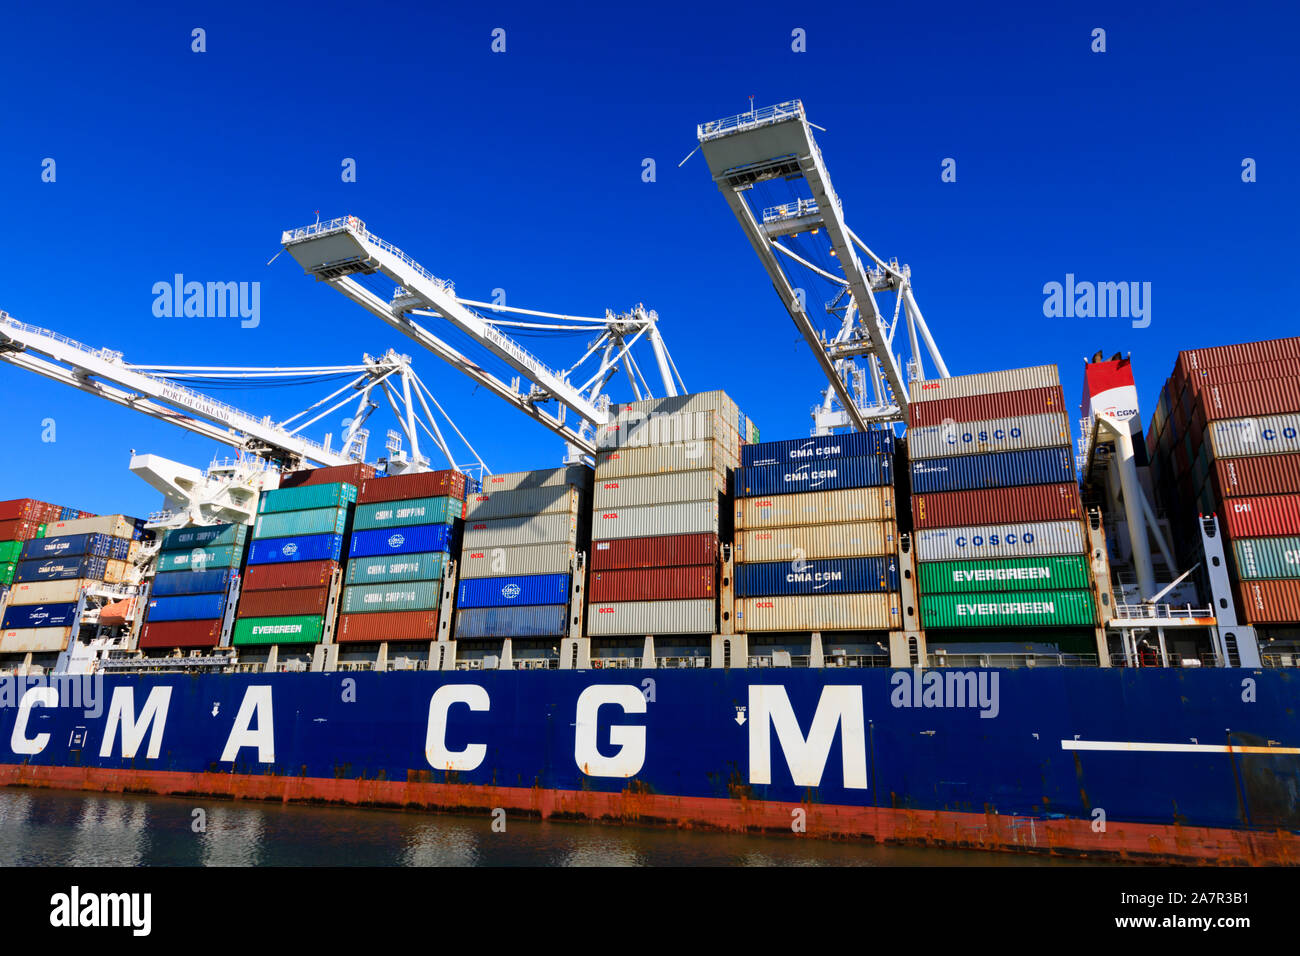 Französische besessen, CMA CGM Containerschiff geladen werden, der Hafen von Oakland, Alameda County, Kalifornien, Vereinigte Staaten von Amerika. Stockfoto